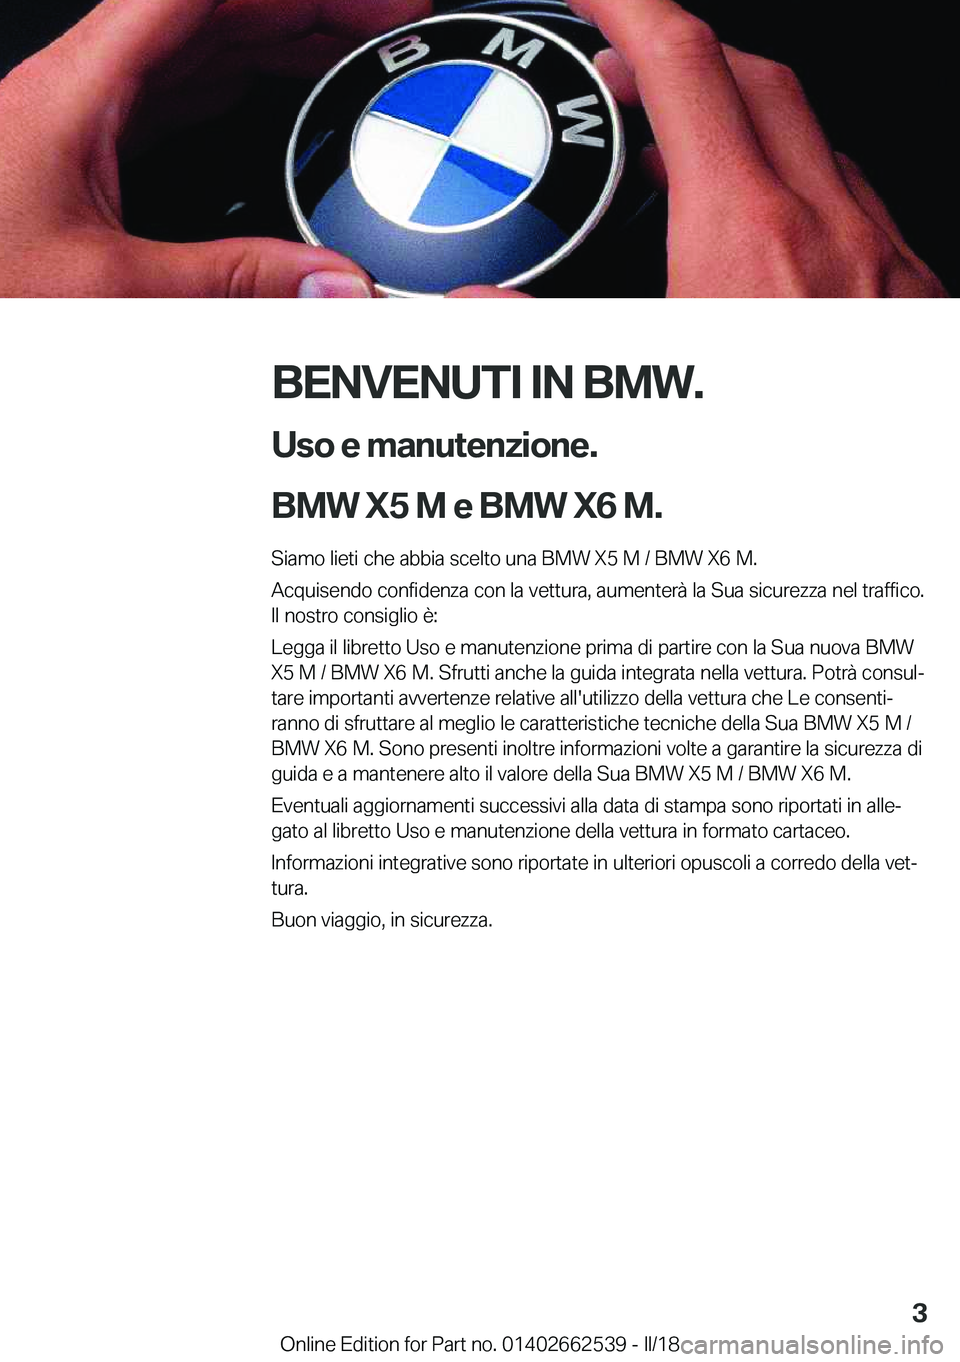 BMW X5 M 2018  Libretti Di Uso E manutenzione (in Italian) �B�E�N�V�E�N�U�T�I��I�N��B�M�W�.�U�s�o��e��m�a�n�u�t�e�n�z�i�o�n�e�.
�B�M�W��X�5��M��e��B�M�W��X�6��M�.
�S�i�a�m�o� �l�i�e�t�i� �c�h�e� �a�b�b�i�a� �s�c�e�l�t�o� �u�n�a� �B�M�W� �X�5� �M� �/